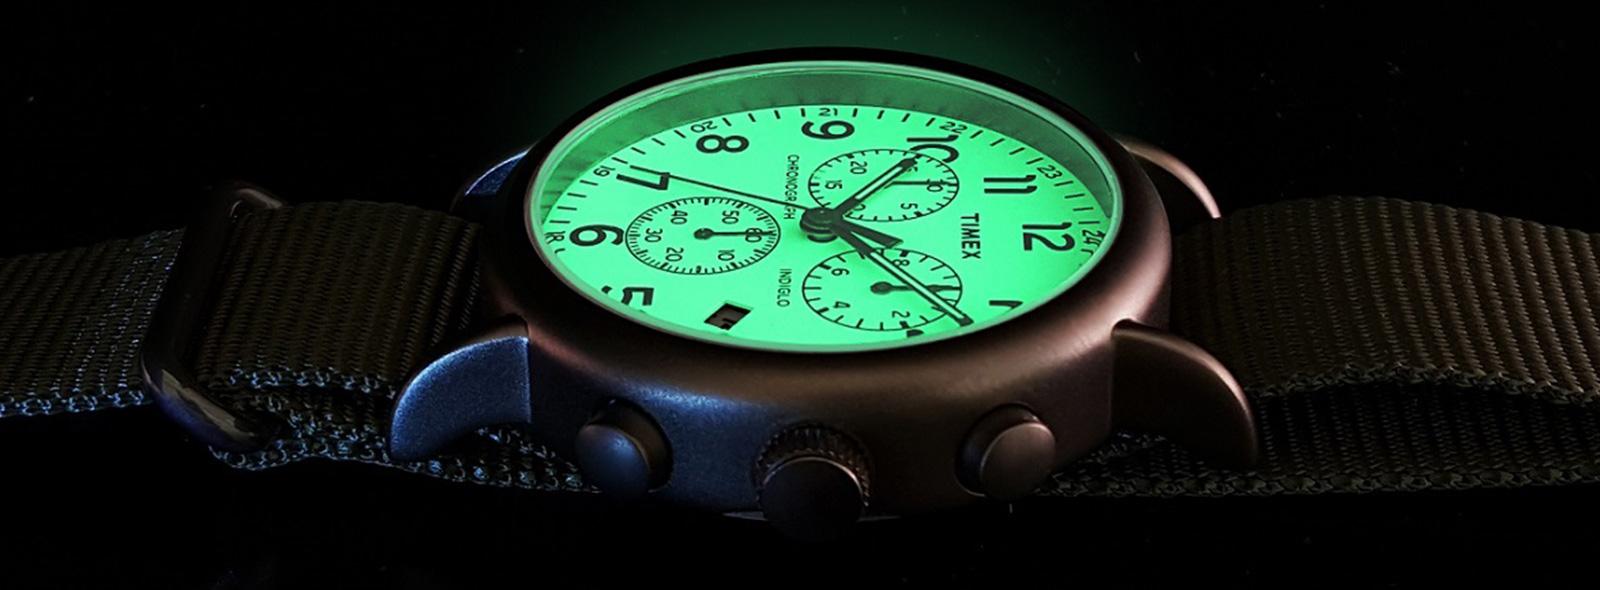 Podświetlenie Indiglo w zegarkach Timex | Zegarownia.pl Blog